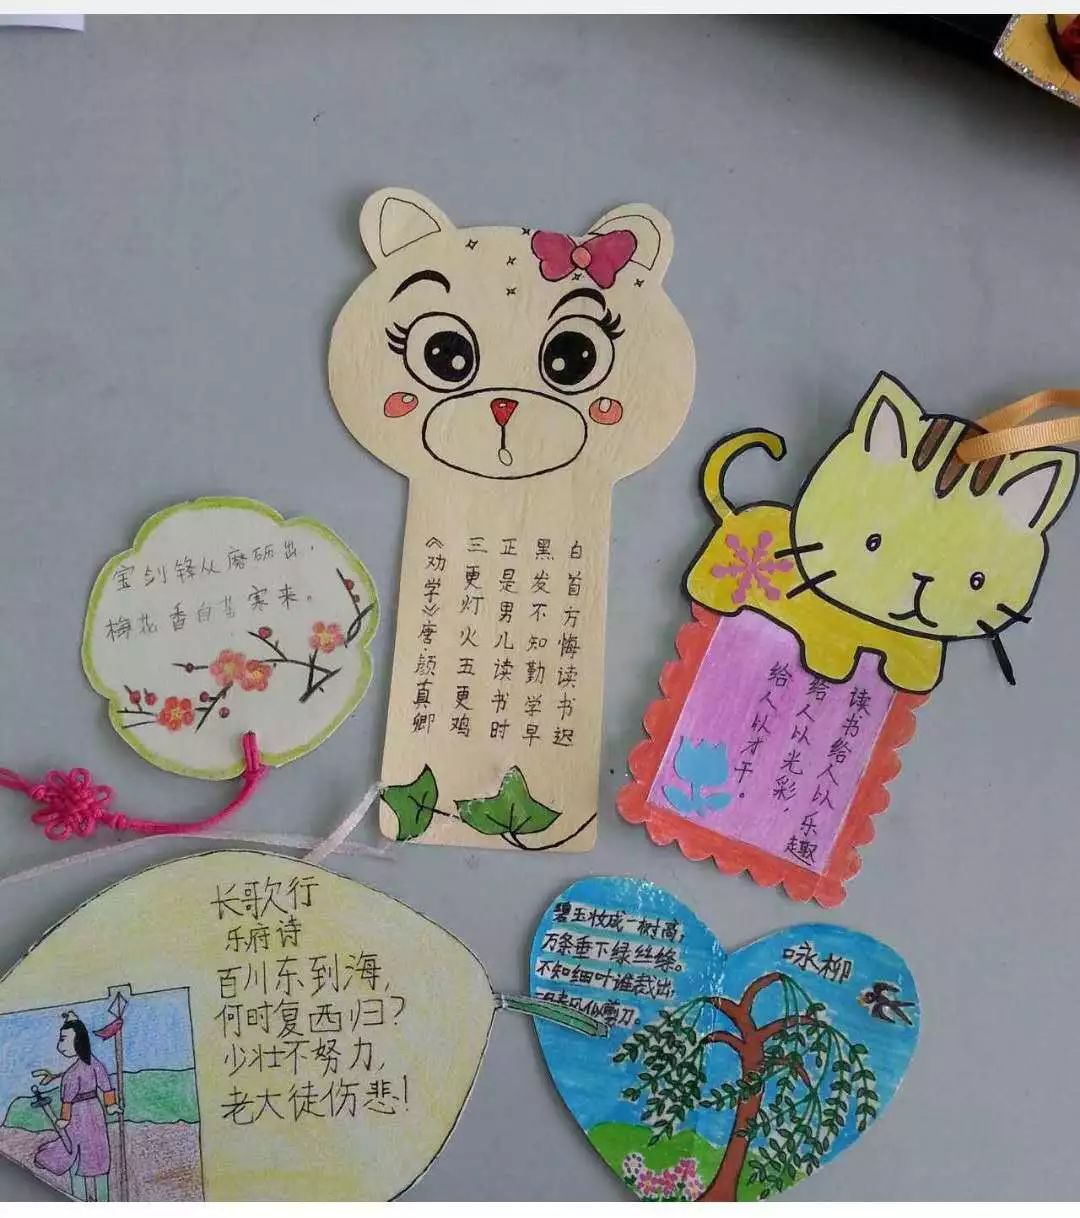 亲子阅读书签为证崇仁县中山实验小学一二年级学生亲子阅读侧记